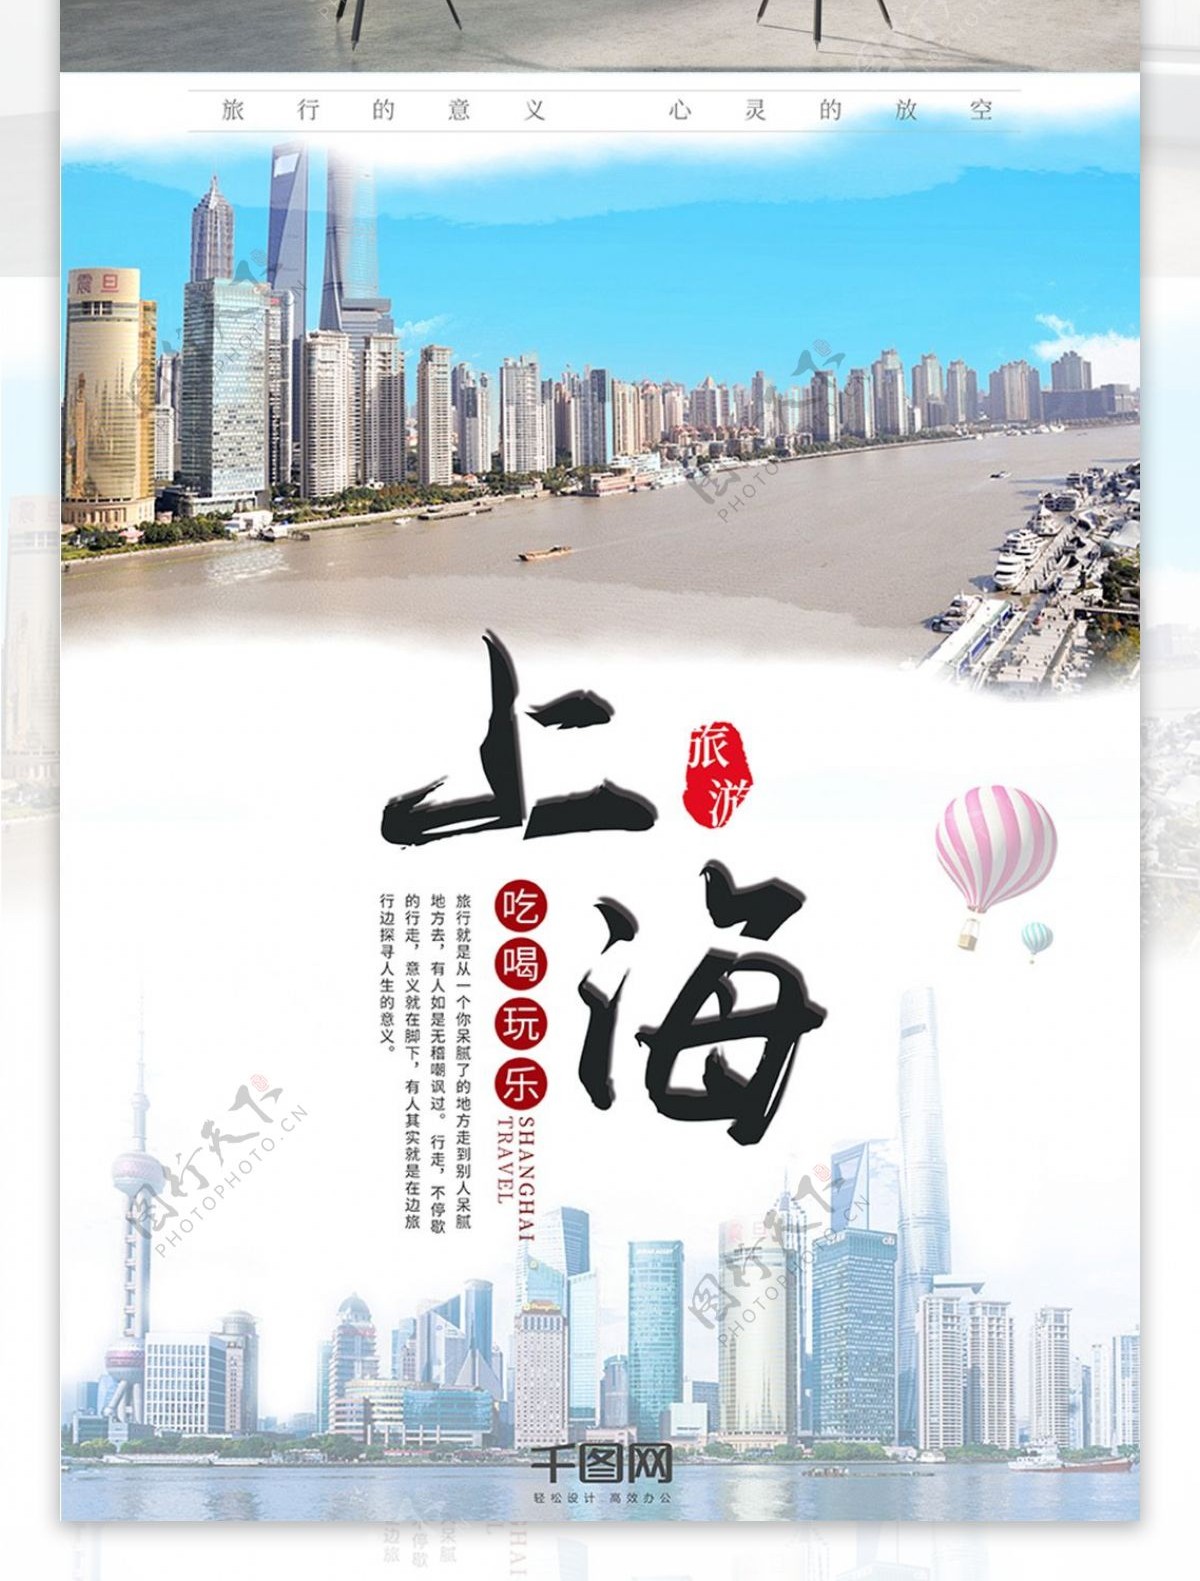 上海旅游国内旅行旅行旅行社宣传海报